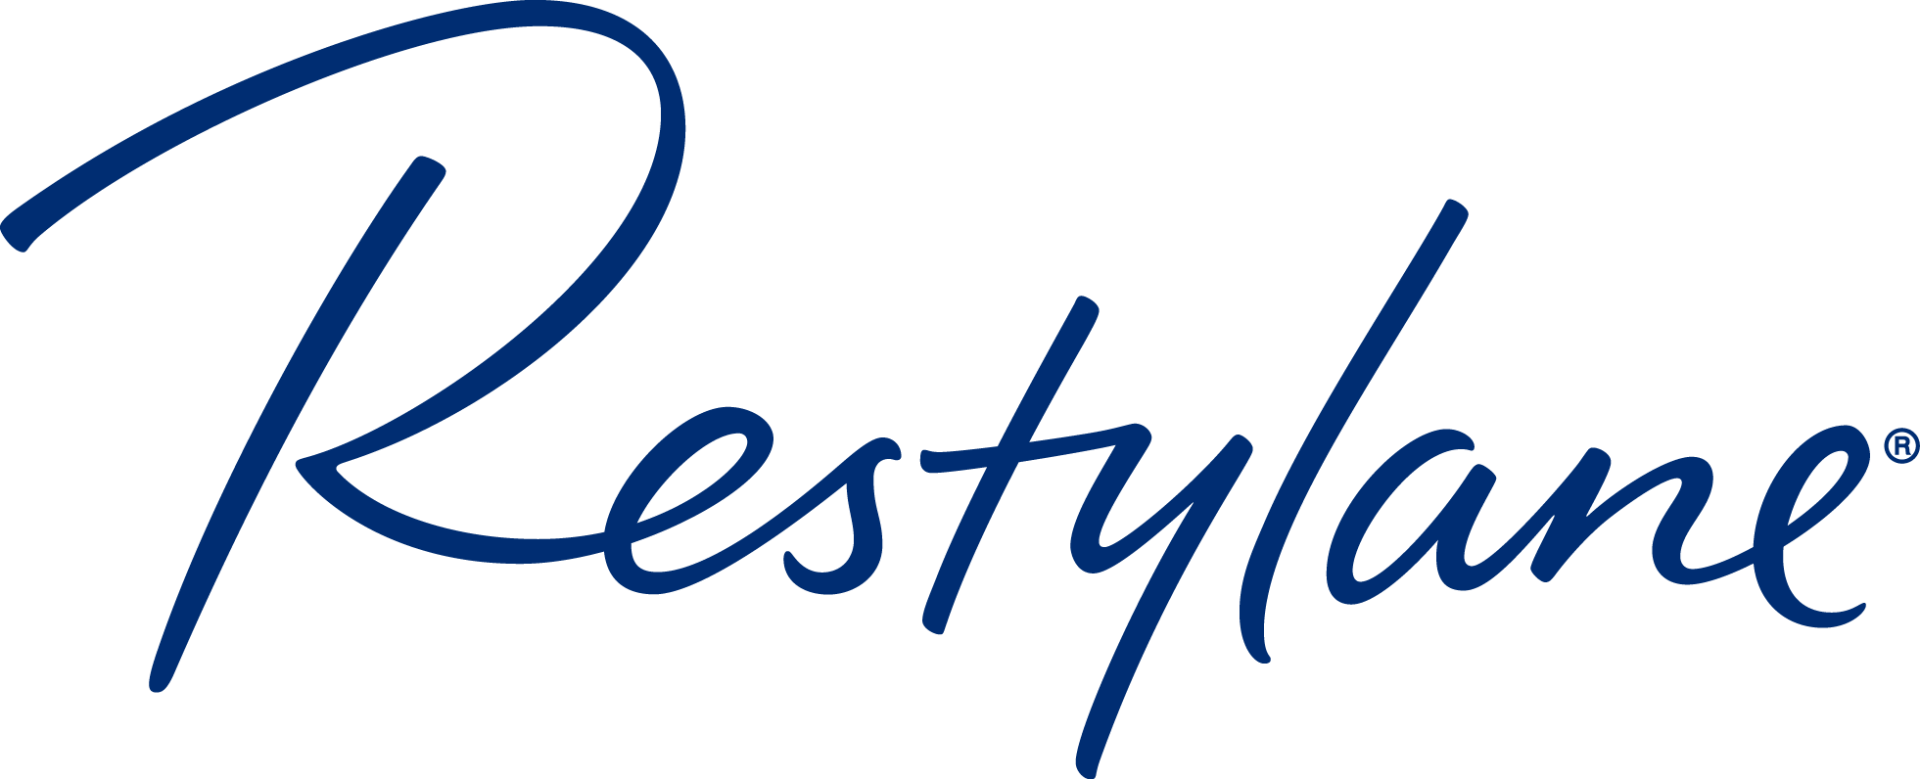 Restylane+prestige+aesthetics+clinic-1920w